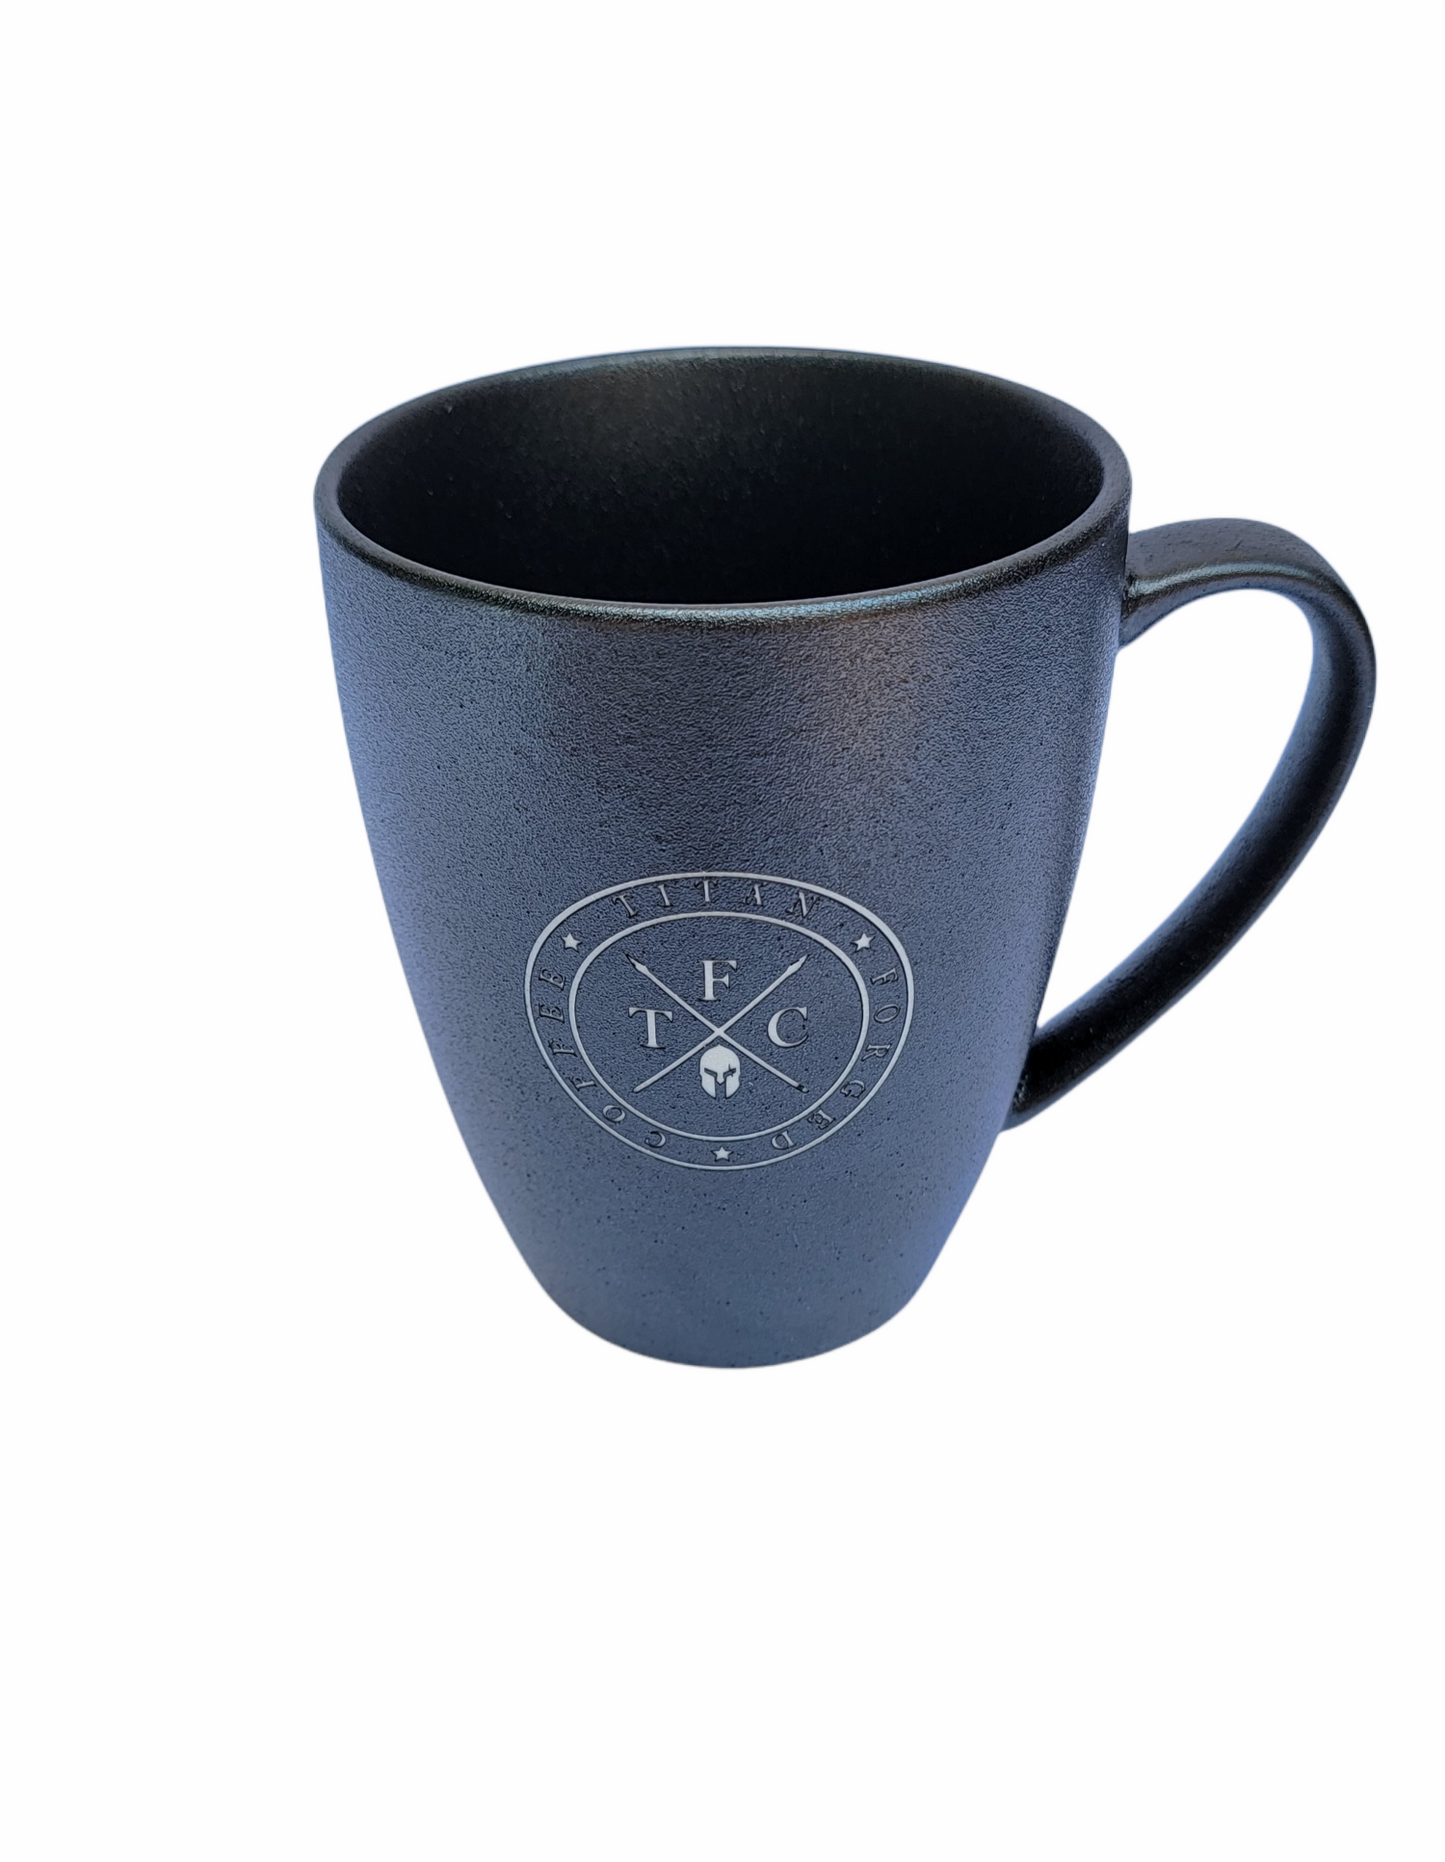 TFC - Ceramic Mug